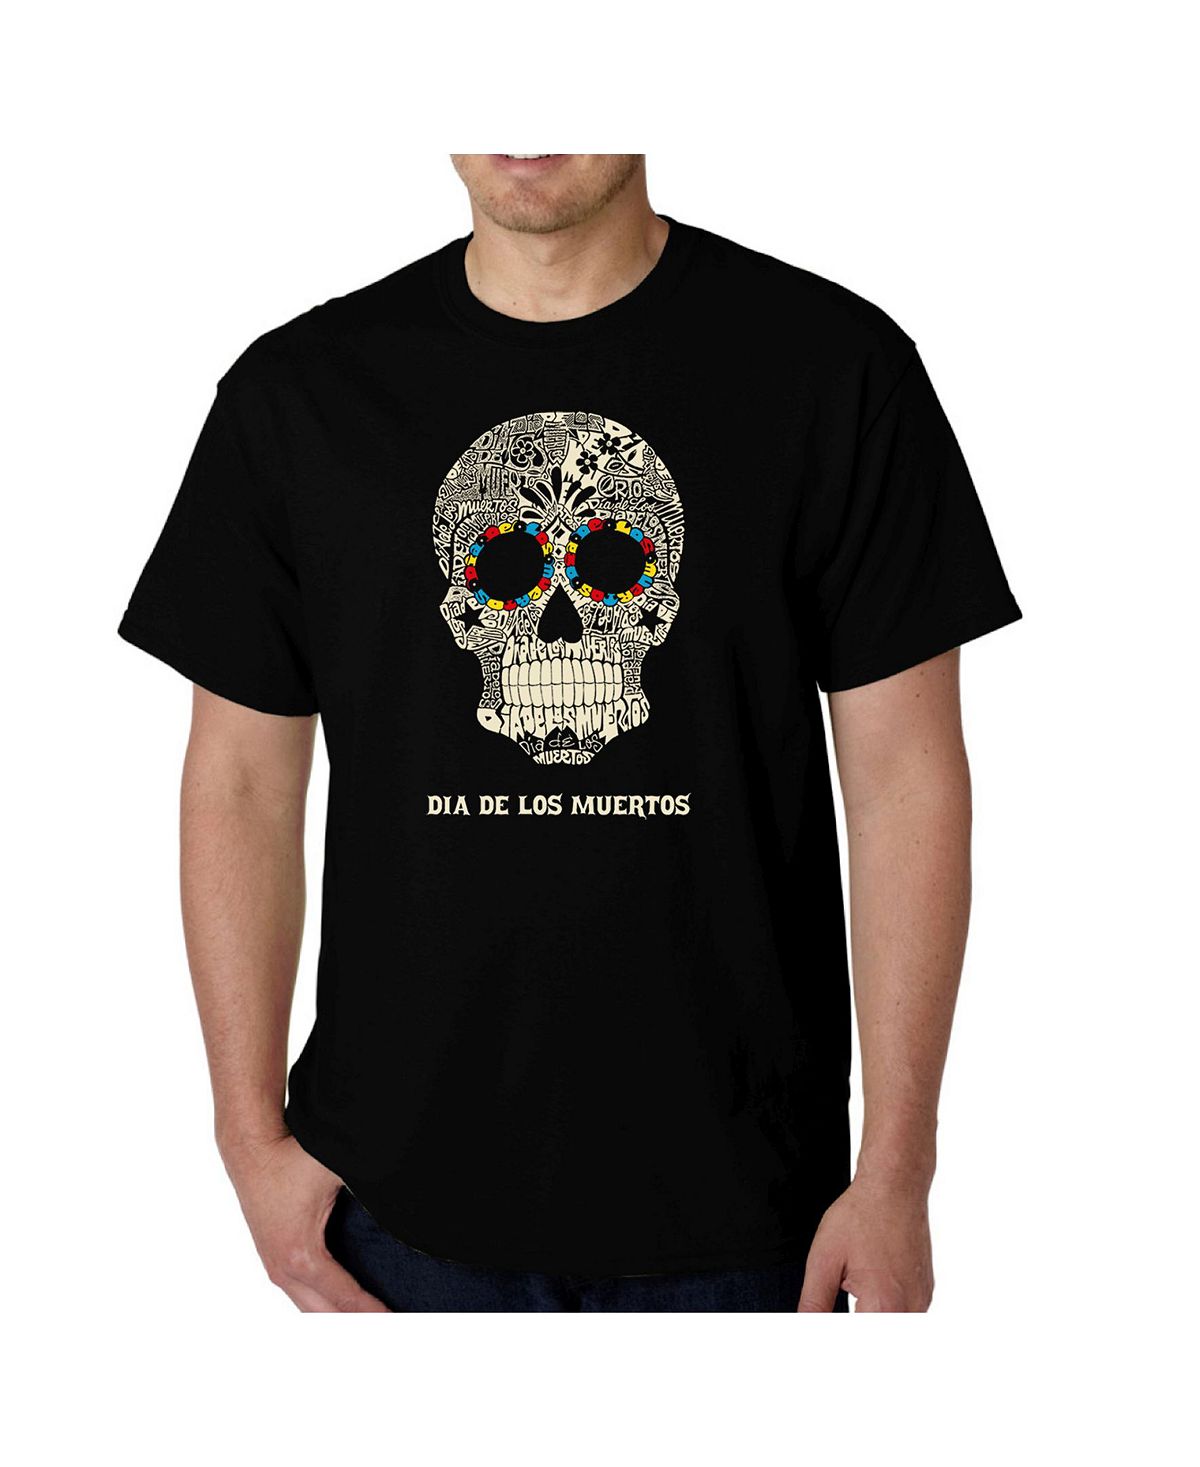 Мужская футболка word art - dia de los muertos LA Pop Art, черный мужская толстовка с капюшоном dia de los muertos word art la pop art черный